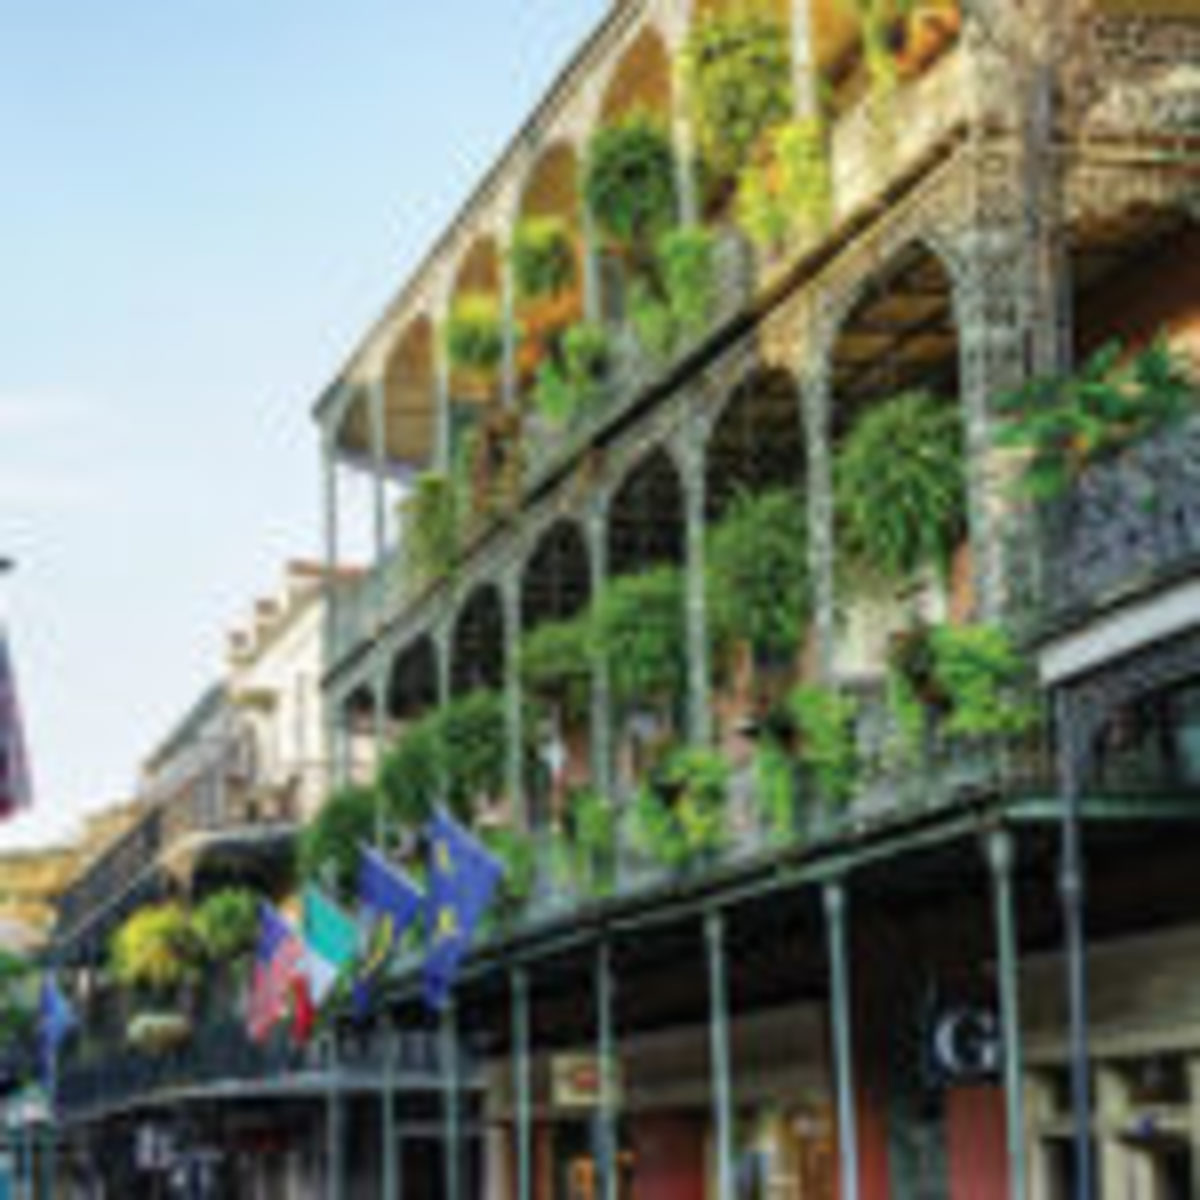  New Orleans Charm Bracelet, Mardi Gras, French Quarter